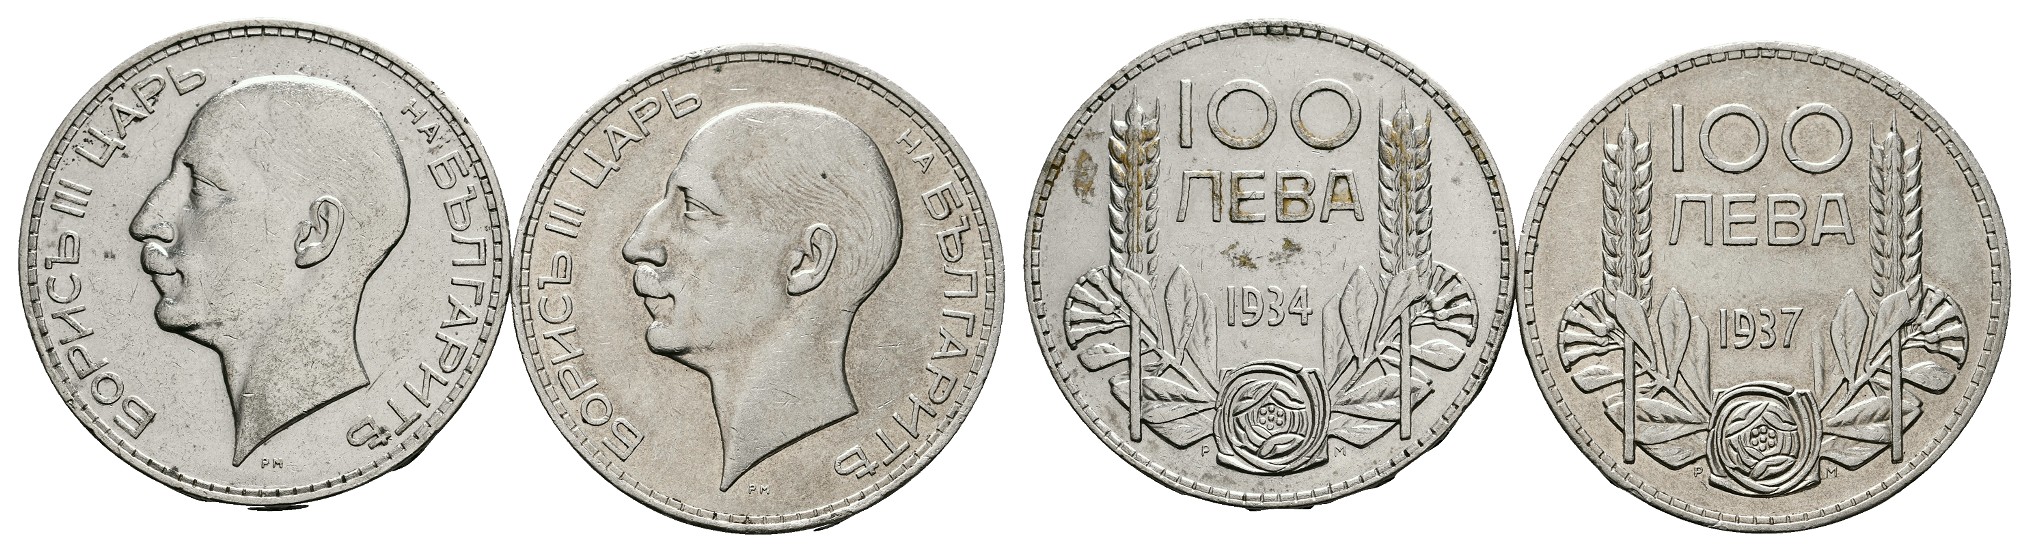  MGS Frankreich 100 Francs (15 Euro) 1997 kleine Meerjungfrau Kopenhagen PP Feingewicht: 19,98g   